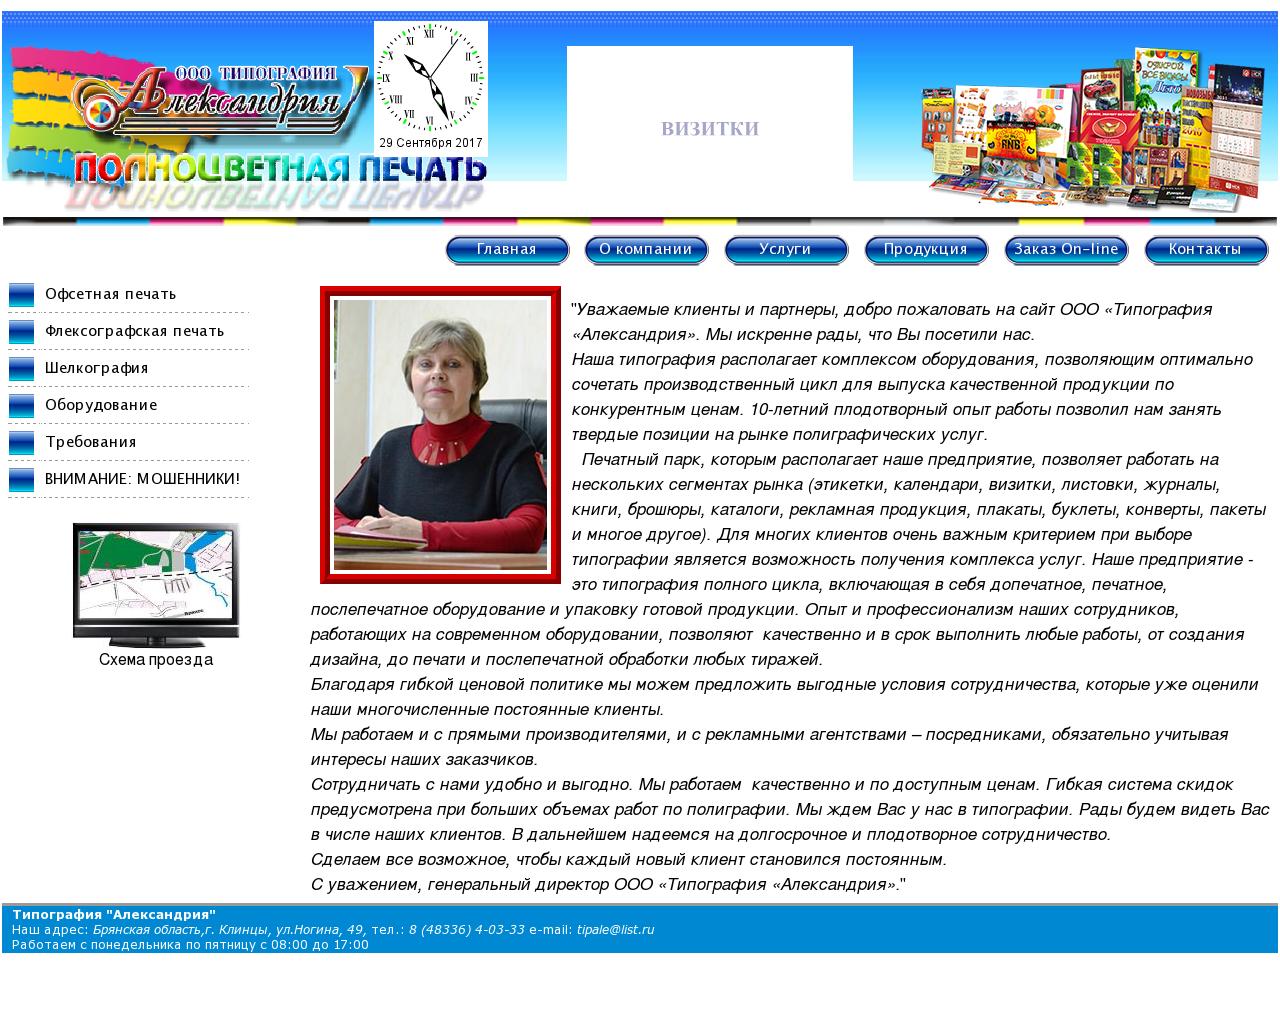 Изображение сайта tipale.ru в разрешении 1280x1024